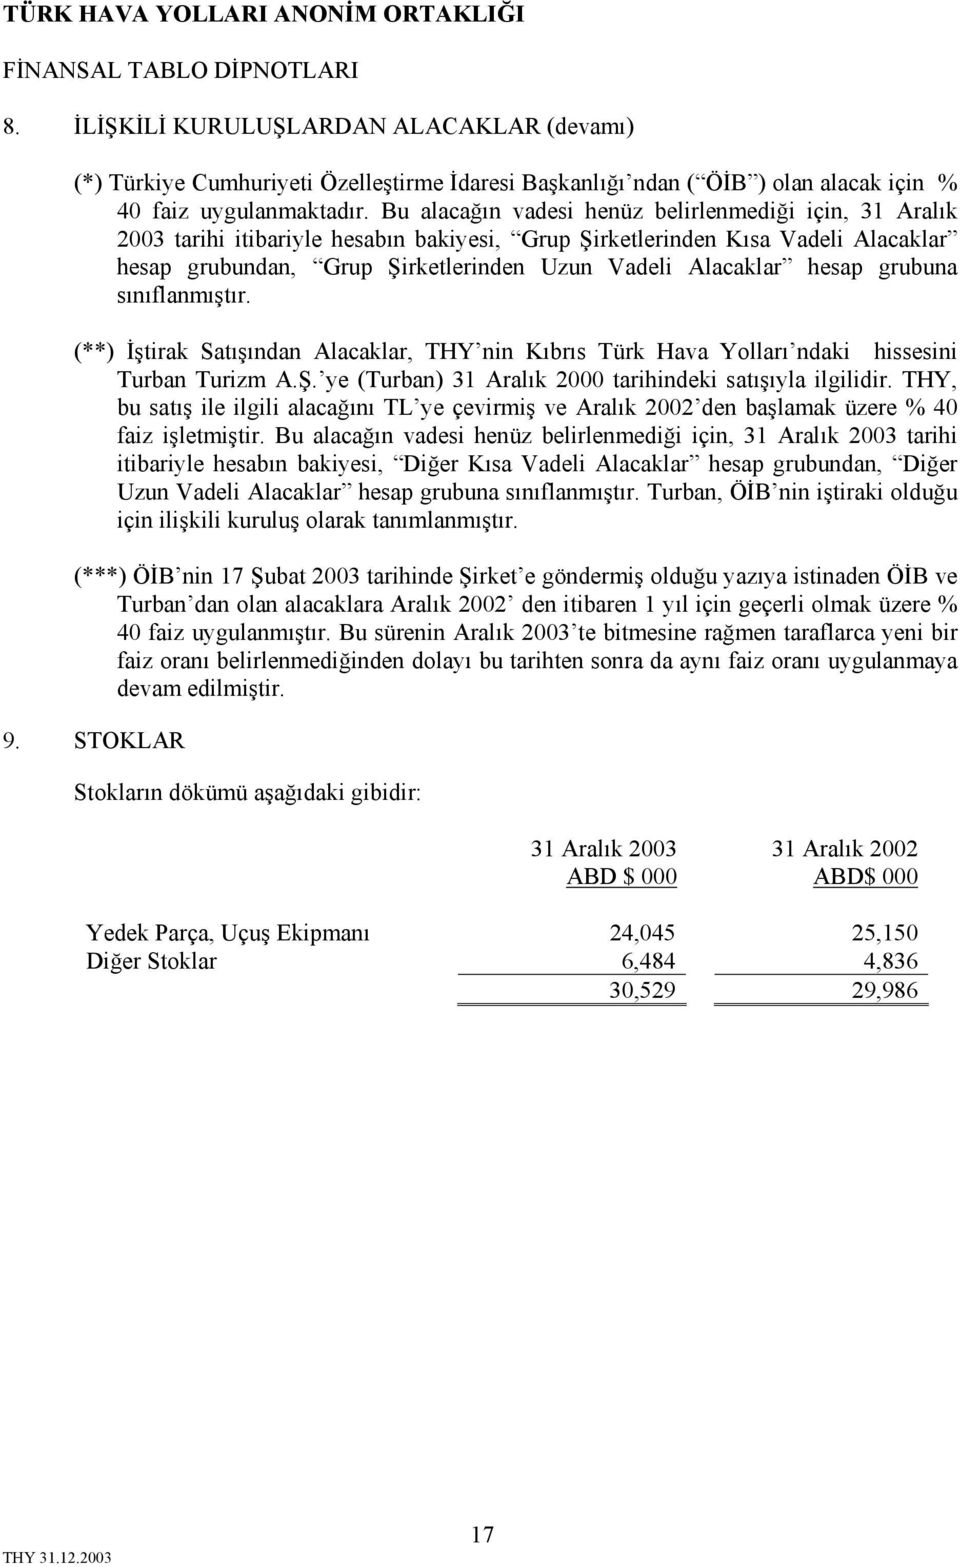 hesap grubuna sınıflanmıştır. (**) İştirak Satışından Alacaklar, THY nin Kıbrıs Türk Hava Yolları ndaki hissesini Turban Turizm A.Ş. ye (Turban) 31 Aralık 2000 tarihindeki satışıyla ilgilidir.